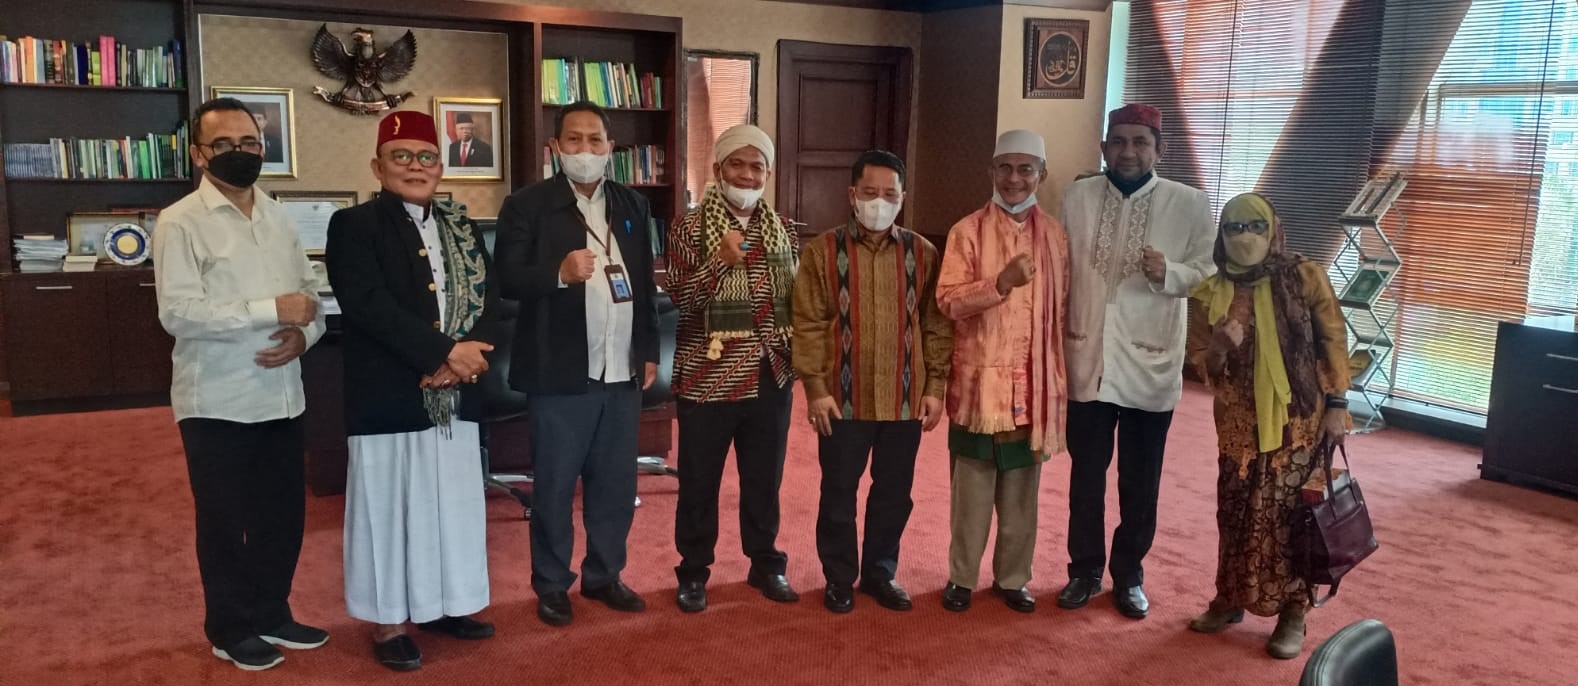 foto: Foto bersama rombongan MUHKI dan Dirjen Bimbingan Masyarakat Kementerian Agama Republik Indonesia